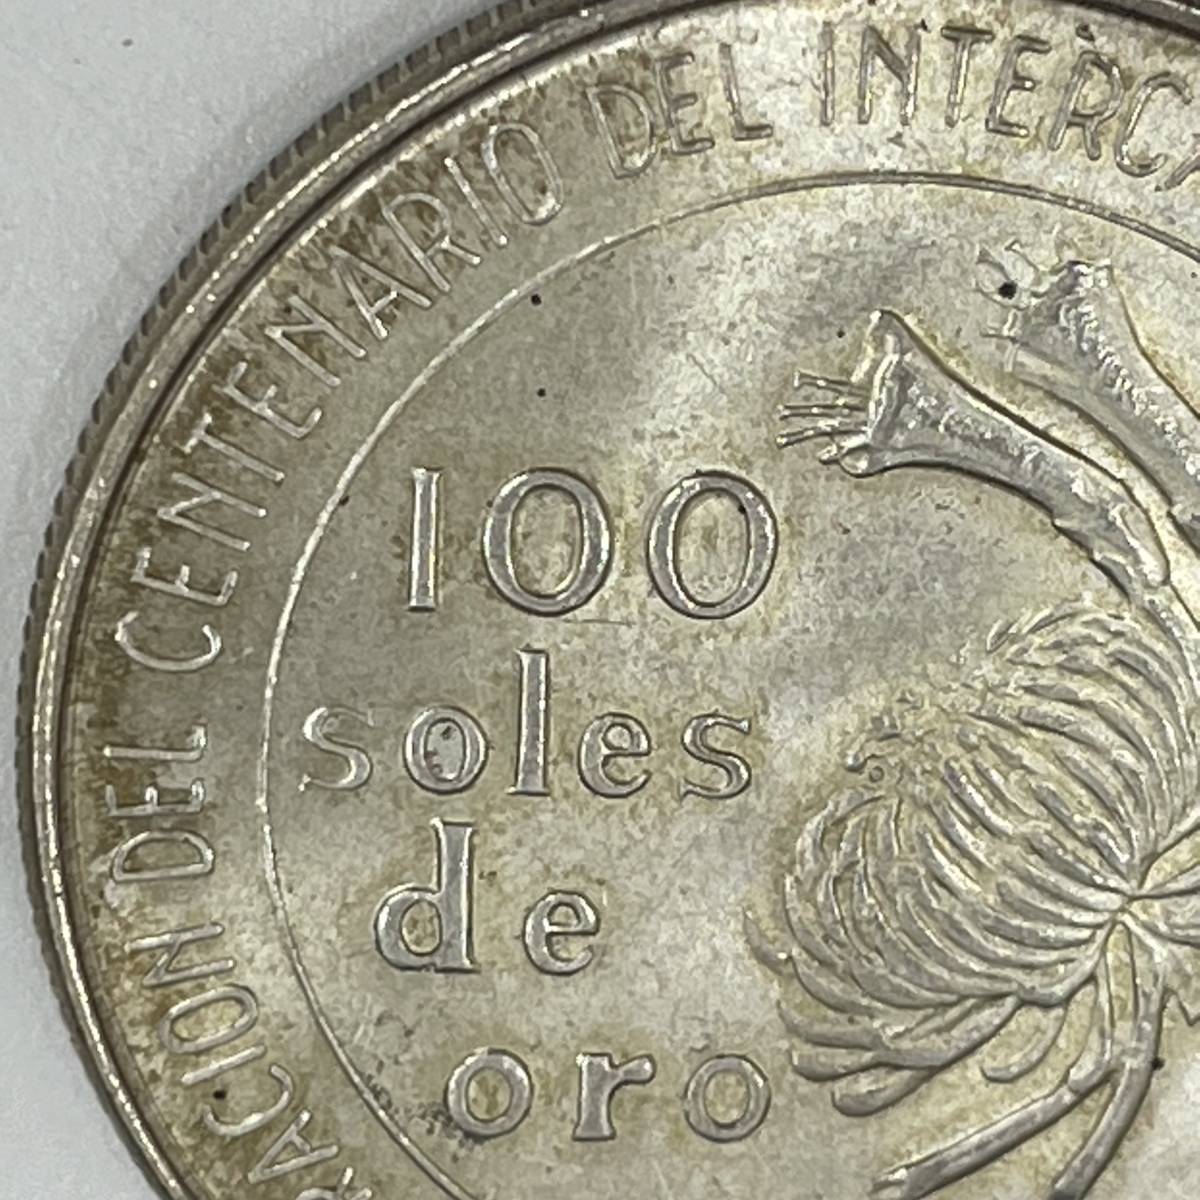 #5163 ペルー修好100周年記念 100ソル 銀貨 100 soles de oro 1873年-1973年 古銭 外国銭 コイン コレクション 現状品の画像6